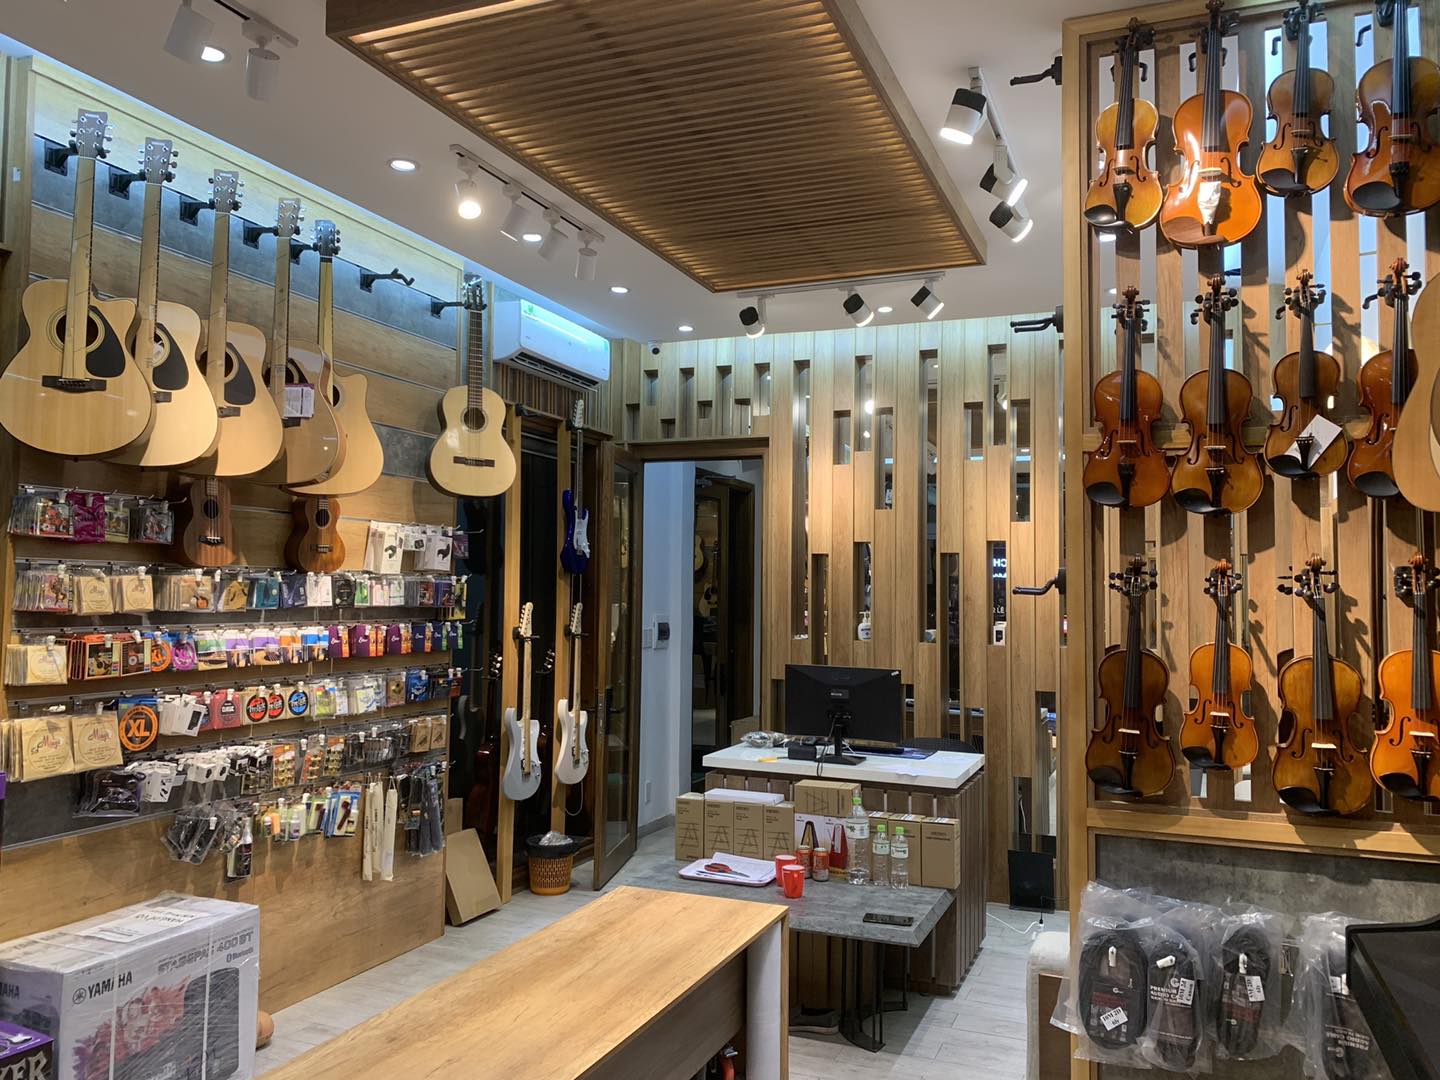 địa chỉ mua đàn guitar ở Đà Nẵng